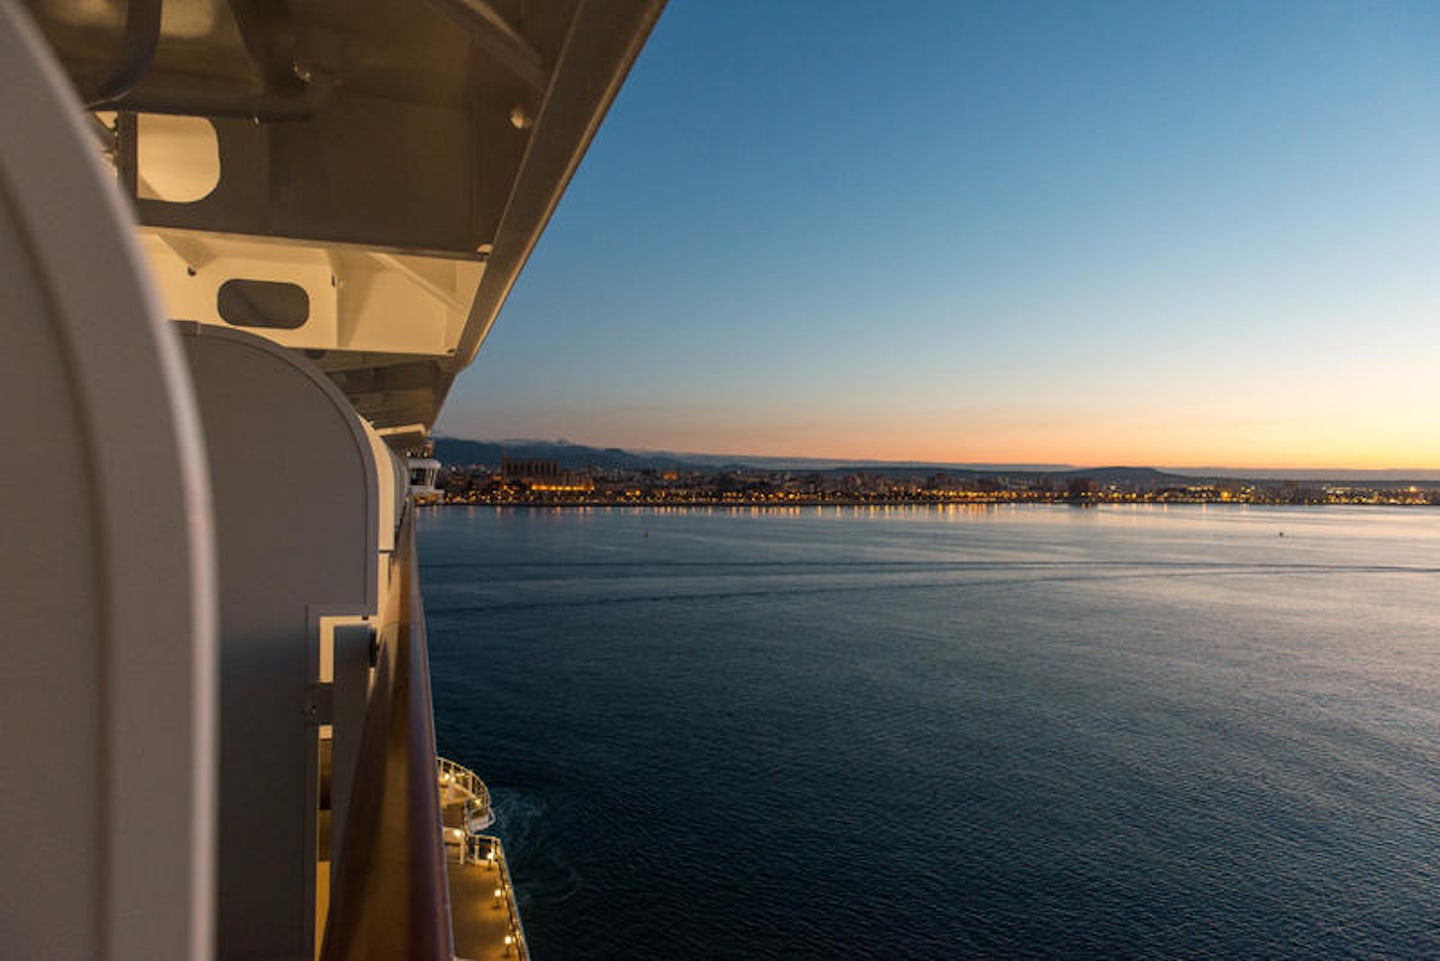 Palma de Mallorca Cruise Port